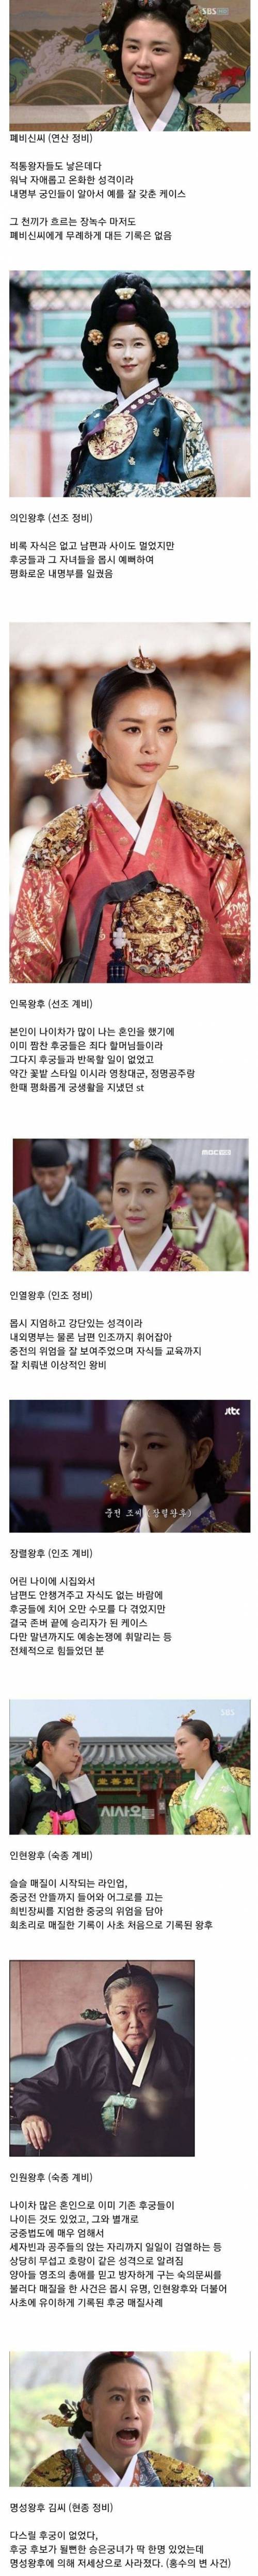 조선 왕실 중전마마들이 내명부 기강잡는 방법.jpg